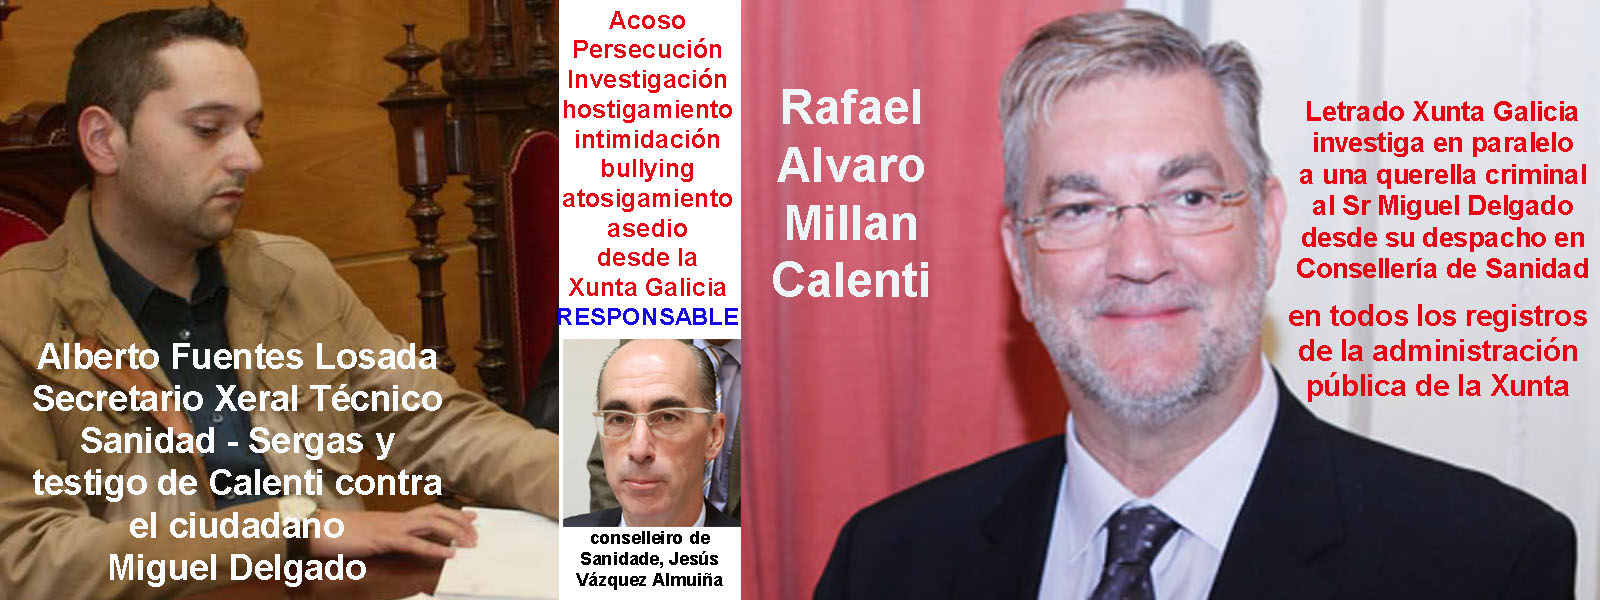 El letrado de la Asesoría de Sanidad Sr Rafael Alvaro Millan Calenti abrió  una investigación dentro de la Xunta de Galicia paralela a la querella  criminal para investigar al periodista Miguel Delgado. |